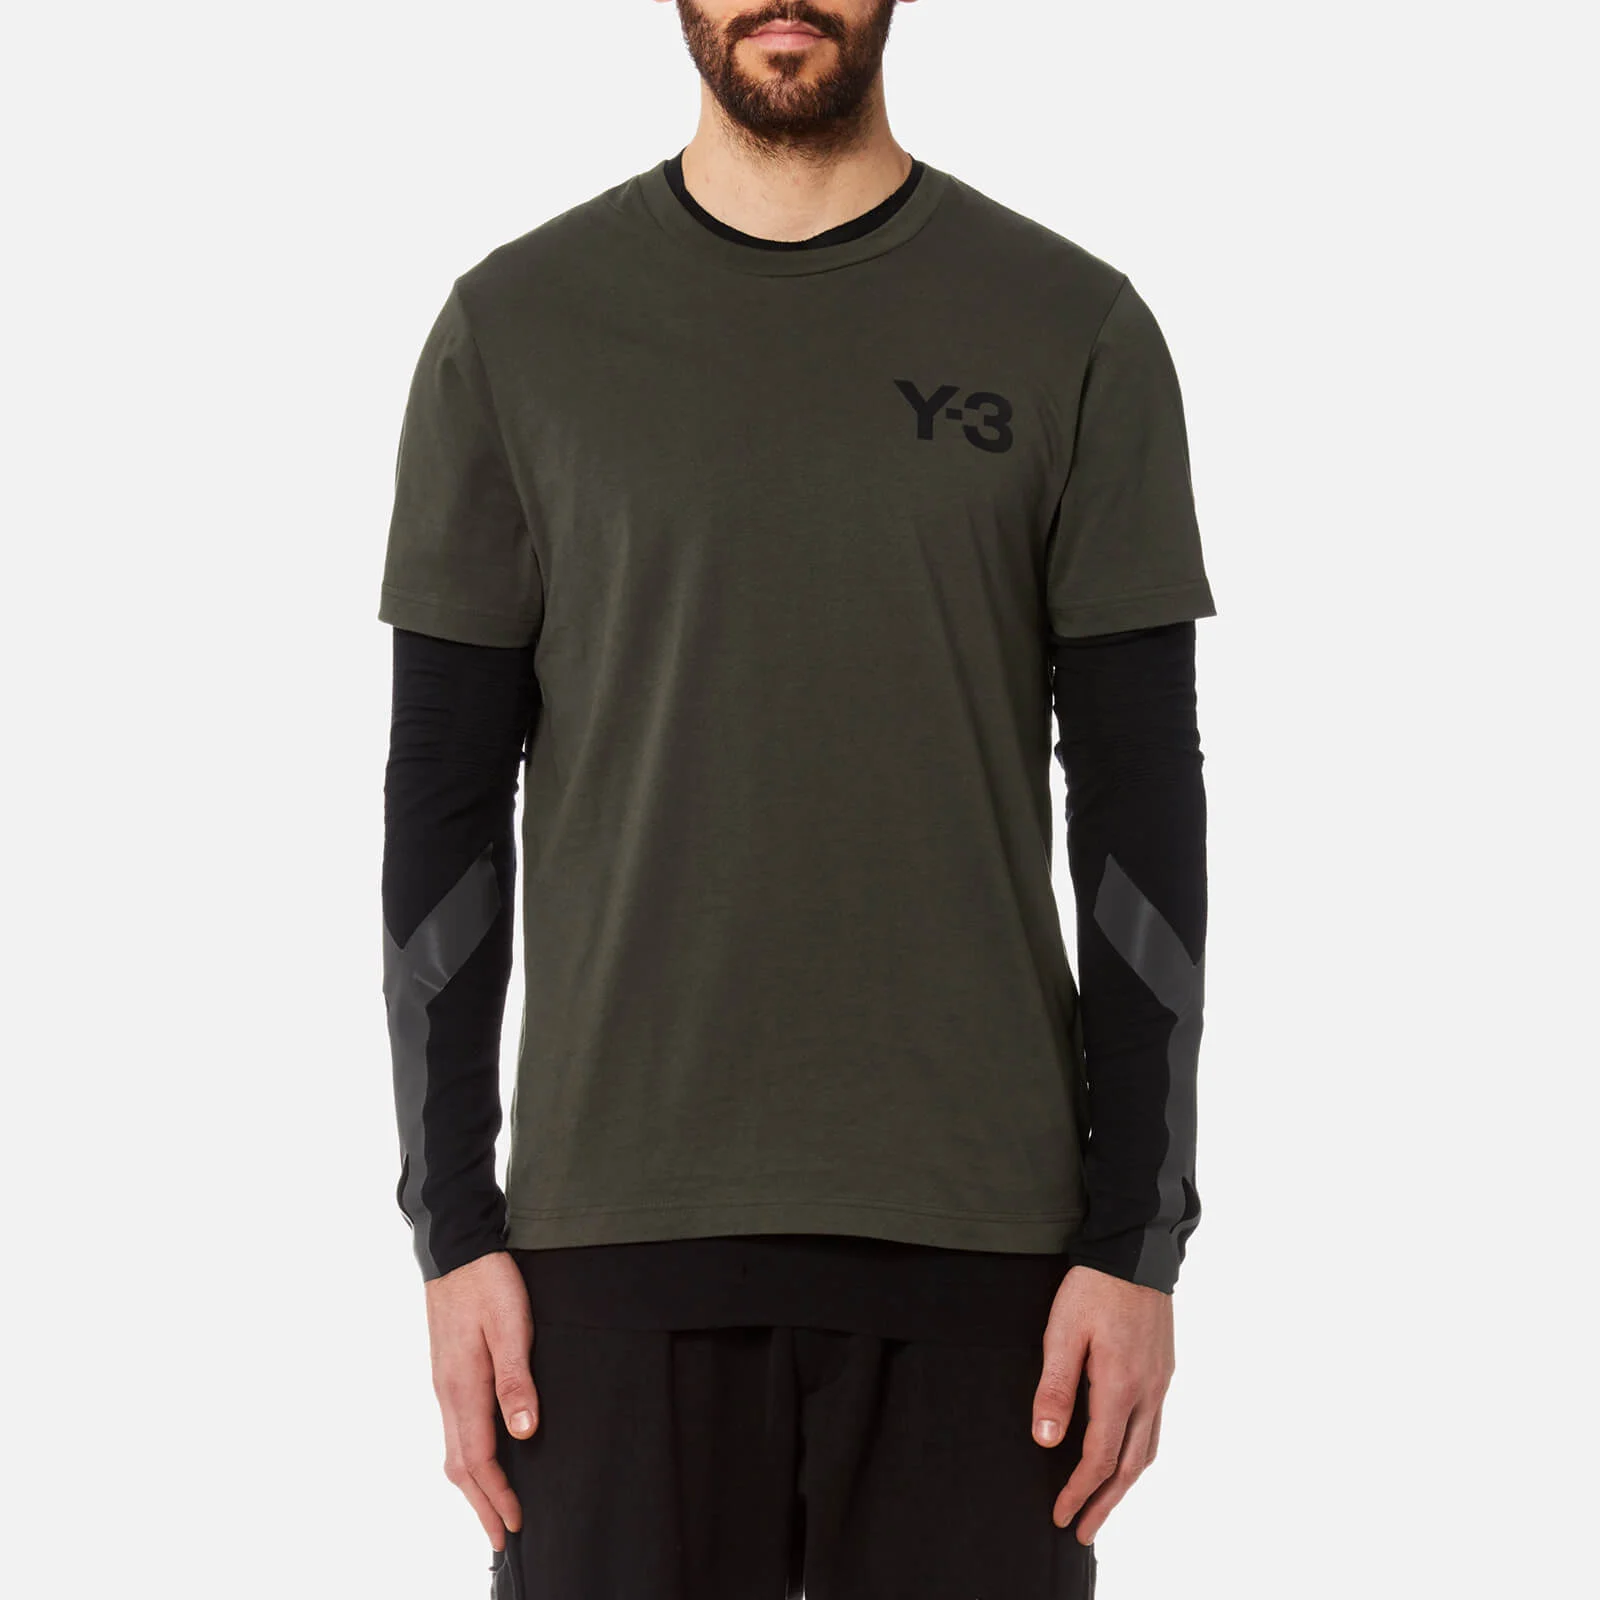 Y-3 Men's Short Sleeve Crew Neck Front T-Shirt - Black Olive Image 1